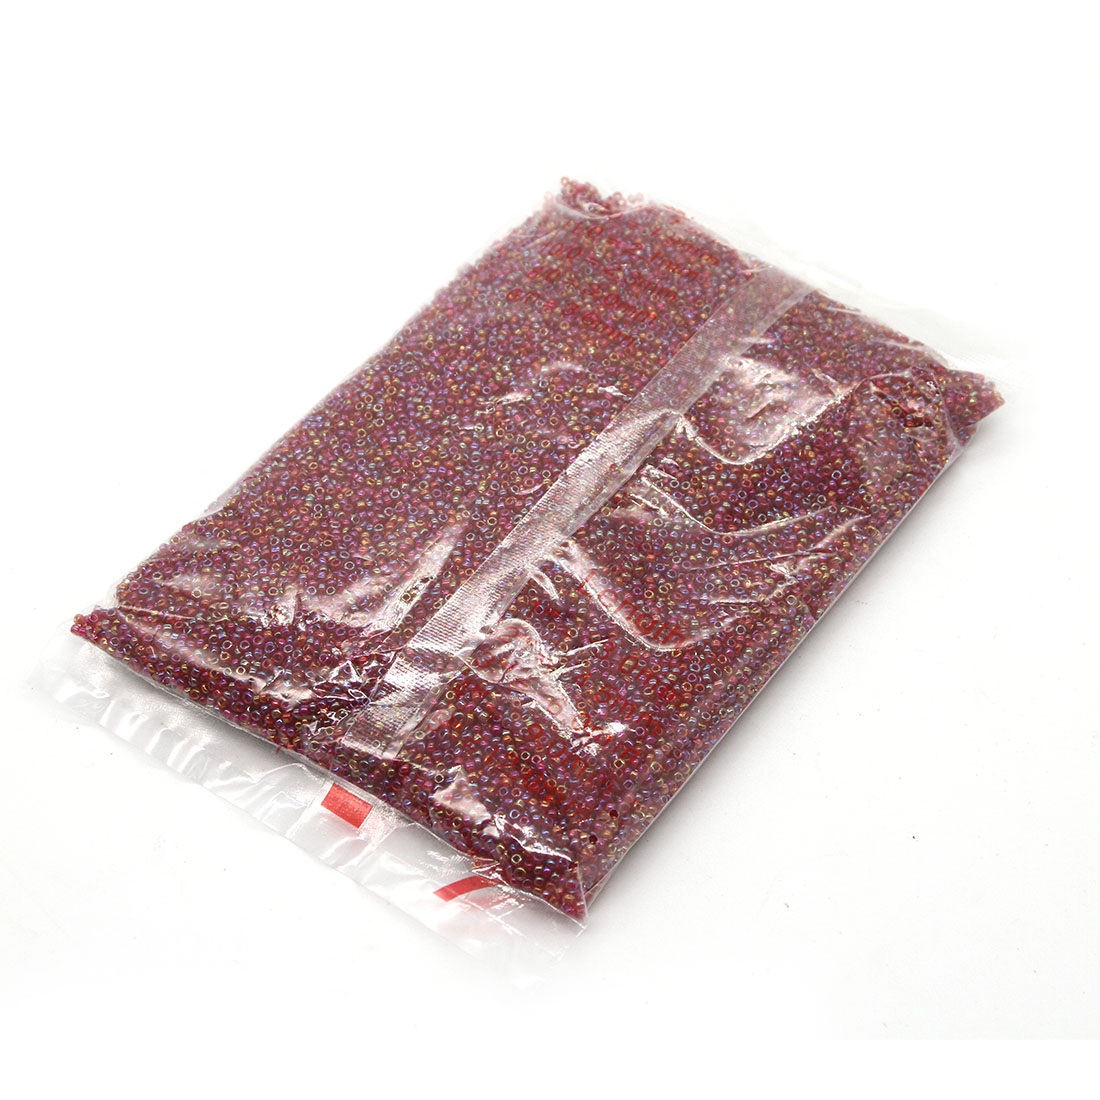 Crimson 3mm 10,000 packs